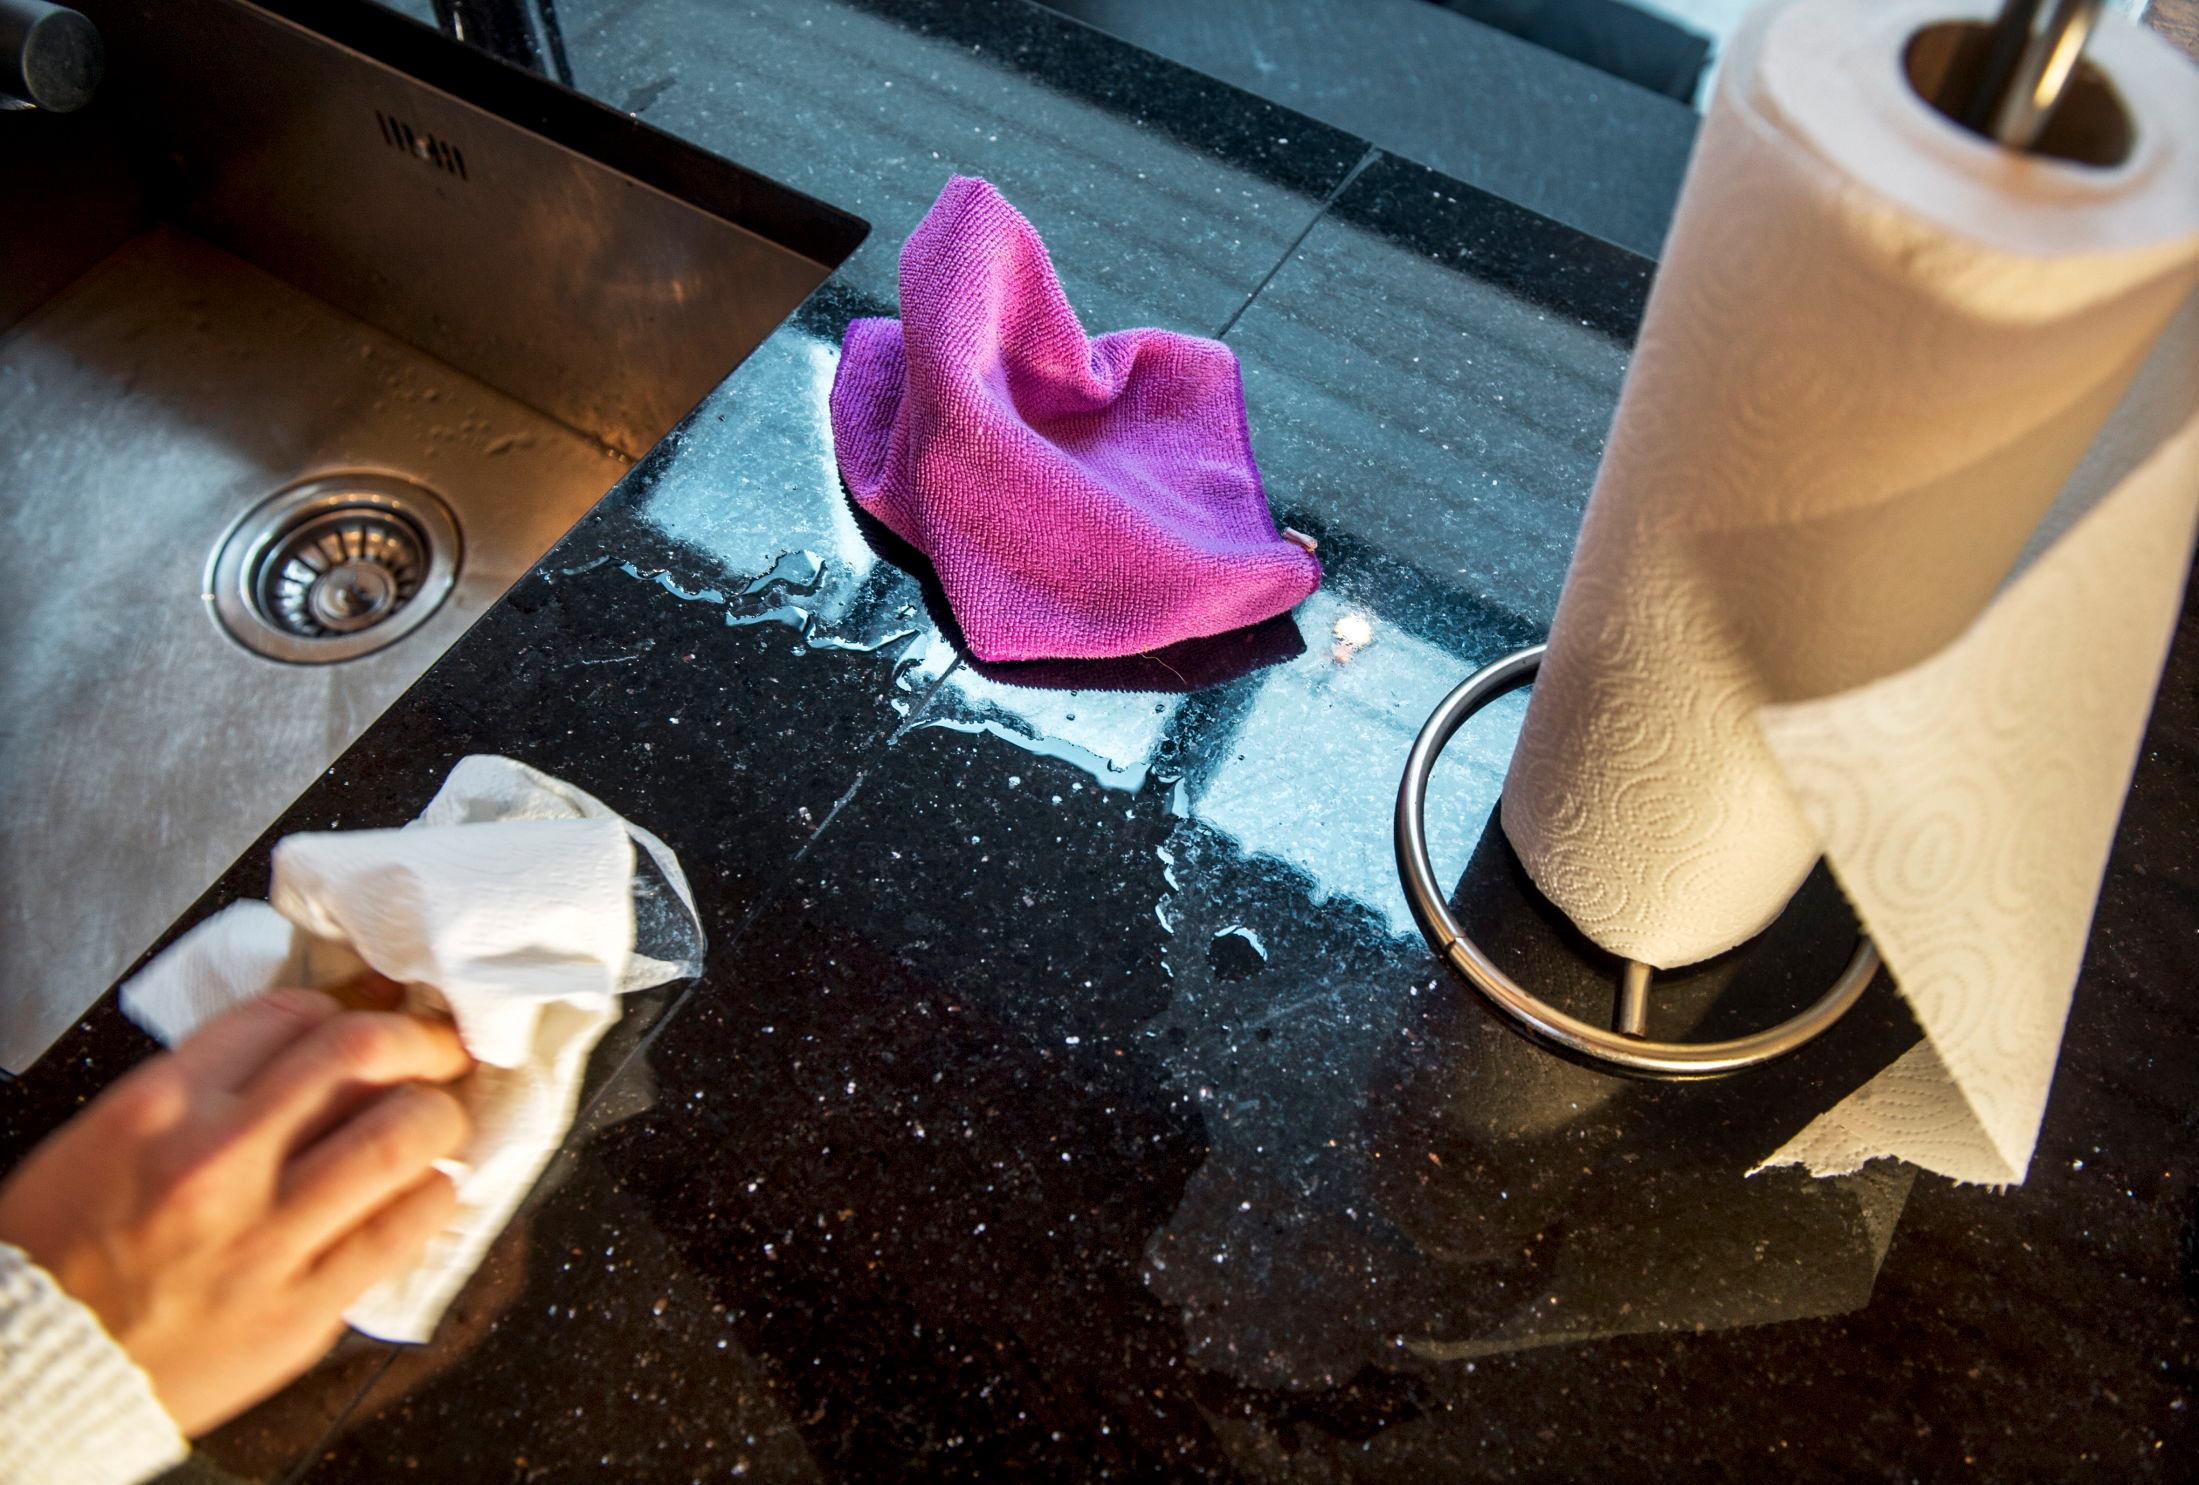 VASK OFTE: Vet du ikke helt hva kluten blir brukt til? Da bør du vaske den ofte. Gjerne på 90 grader! Foto: Helge Mikalsen/VG